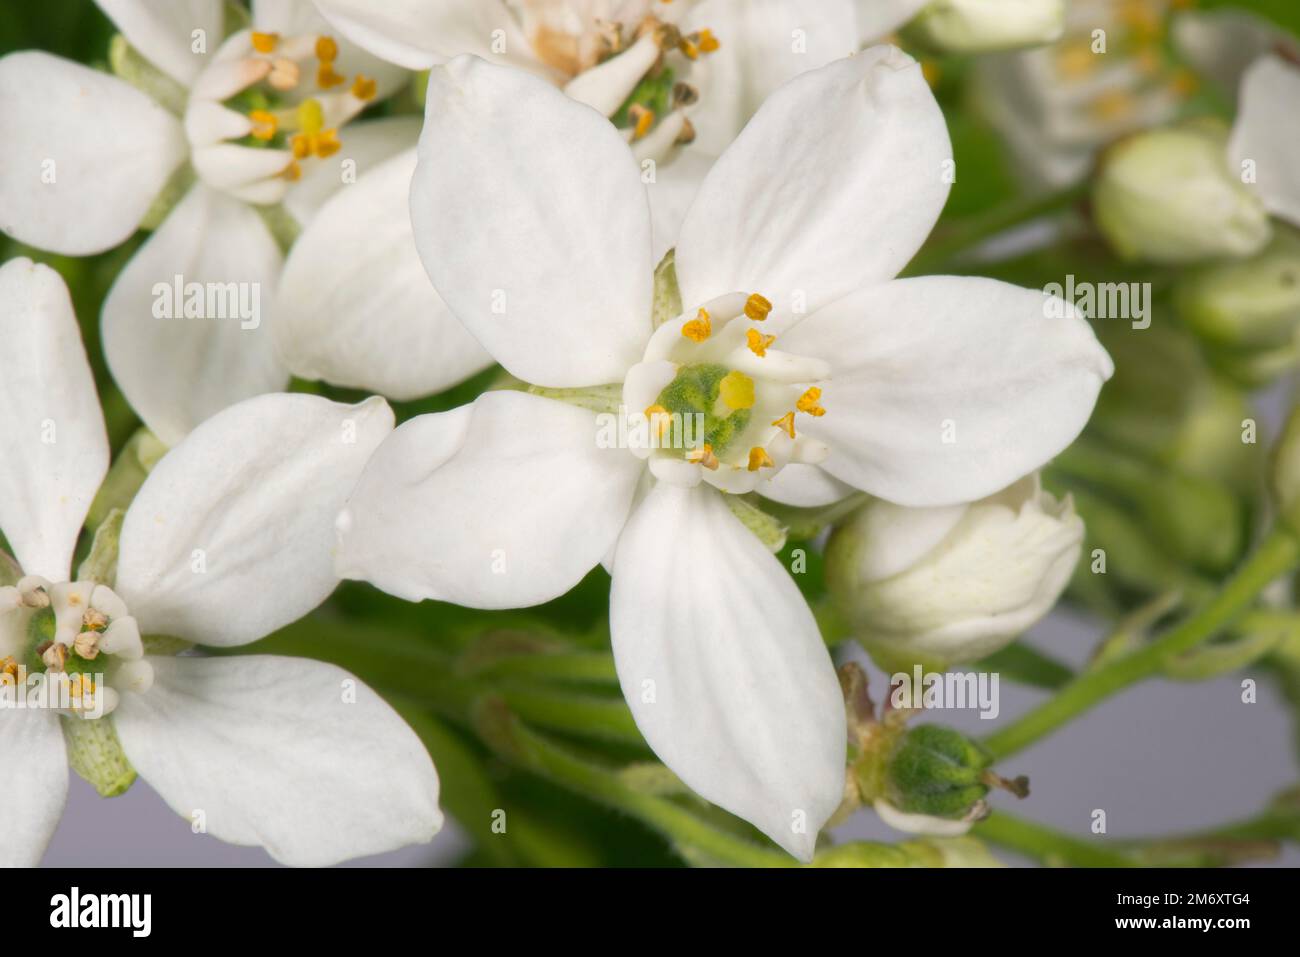 Mexikanische Orangenblüte (Choisya ternata), weiße duftende sternförmige Blume, Anthers, Stäbchen, Ovar, Stigma und Stil Stockfoto